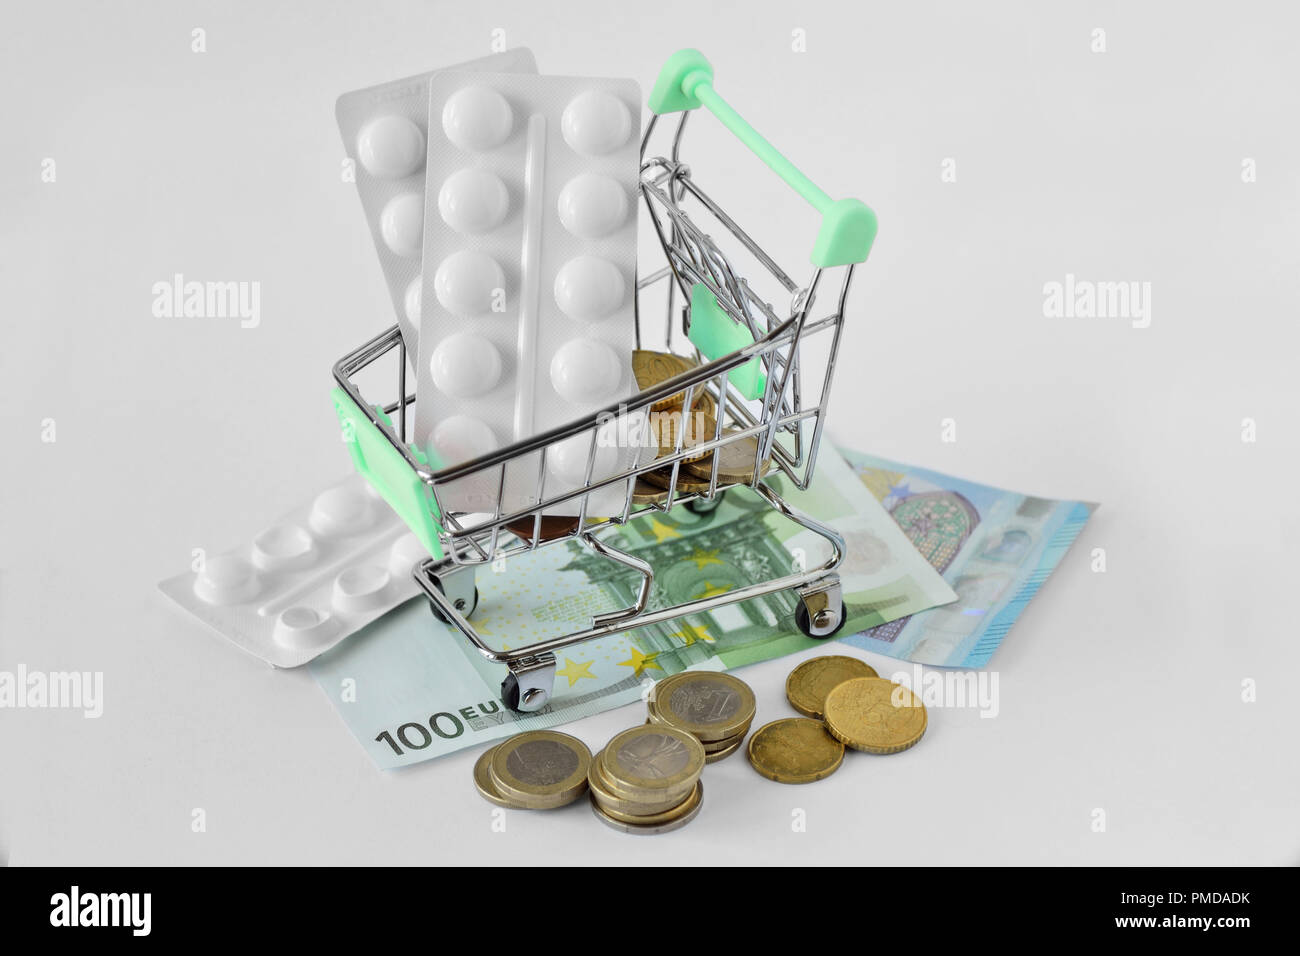 Carrello con pillole medicinali sul denaro - Pharmaceutical cost concept Foto Stock